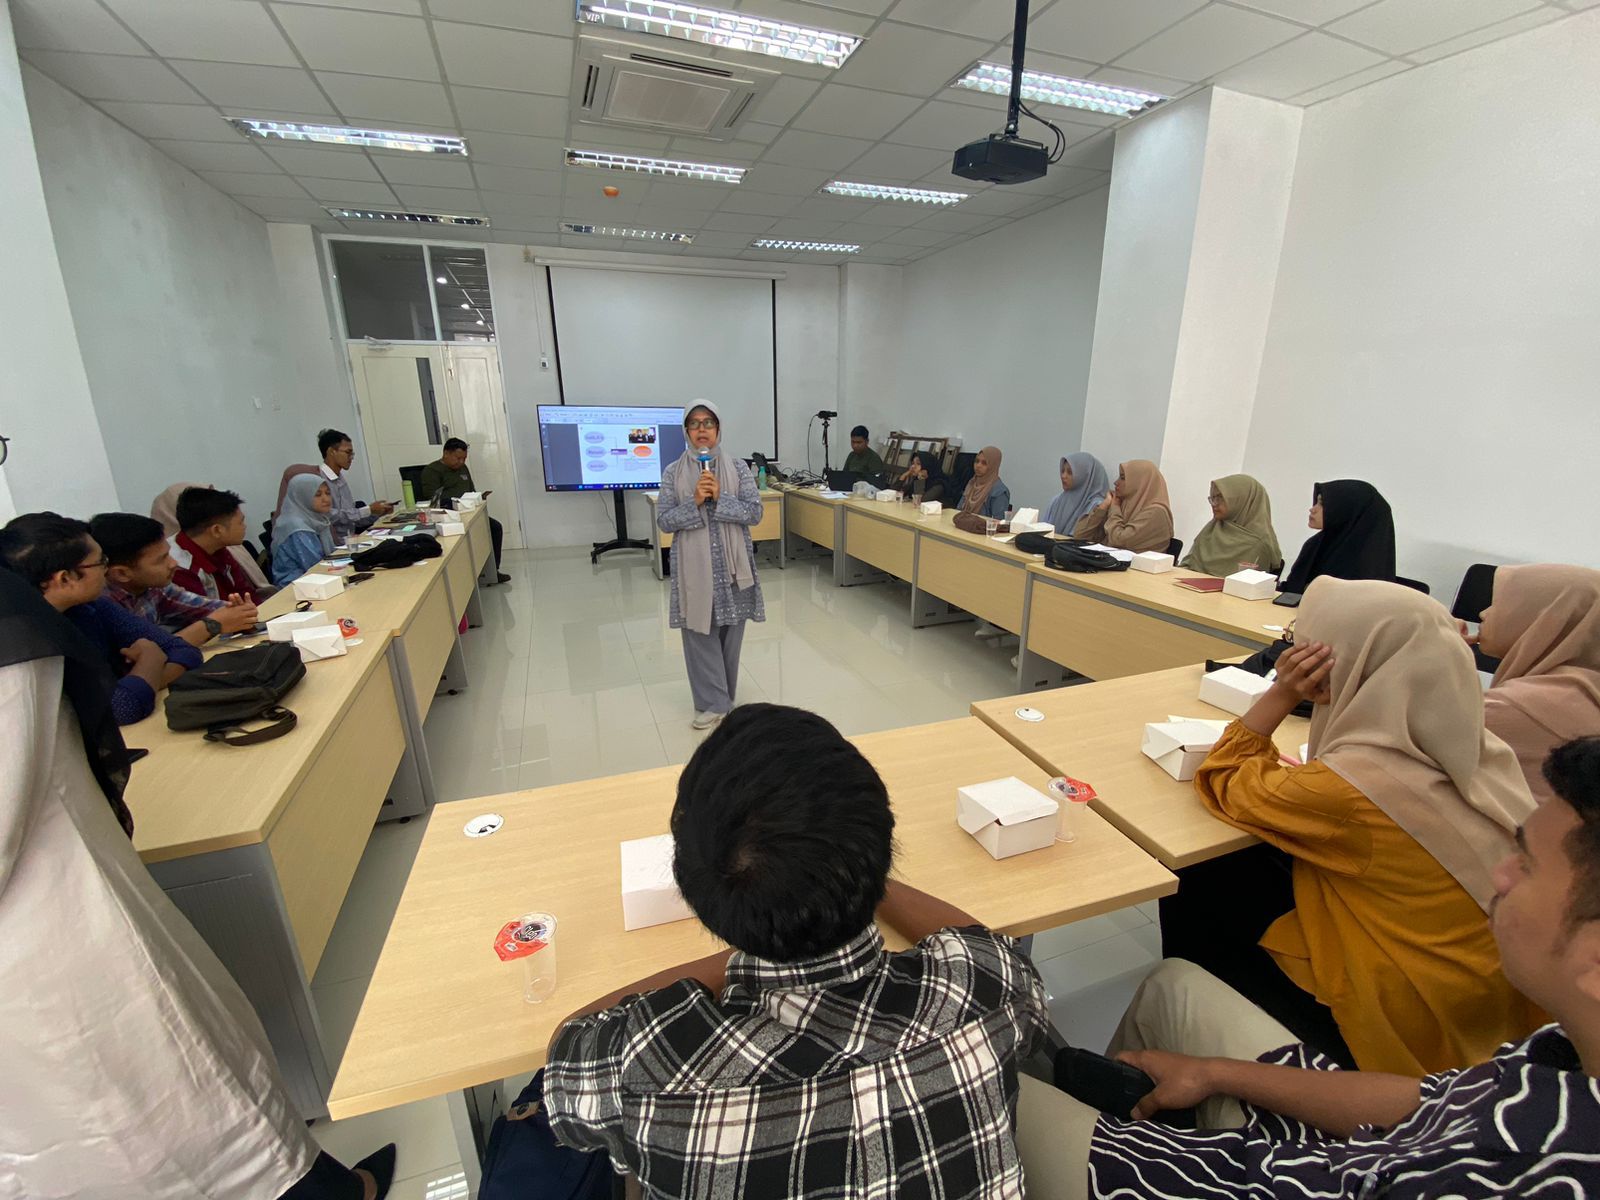 Pelatihan Enumerator Kajian Peran Perempuan di Kota Banda Aceh dan Kota Ambon dalam Membangun Ketahanan Masyarakat pada 3 Fase Krisis Konflik, Tsunami dan Pandemi Covid-19